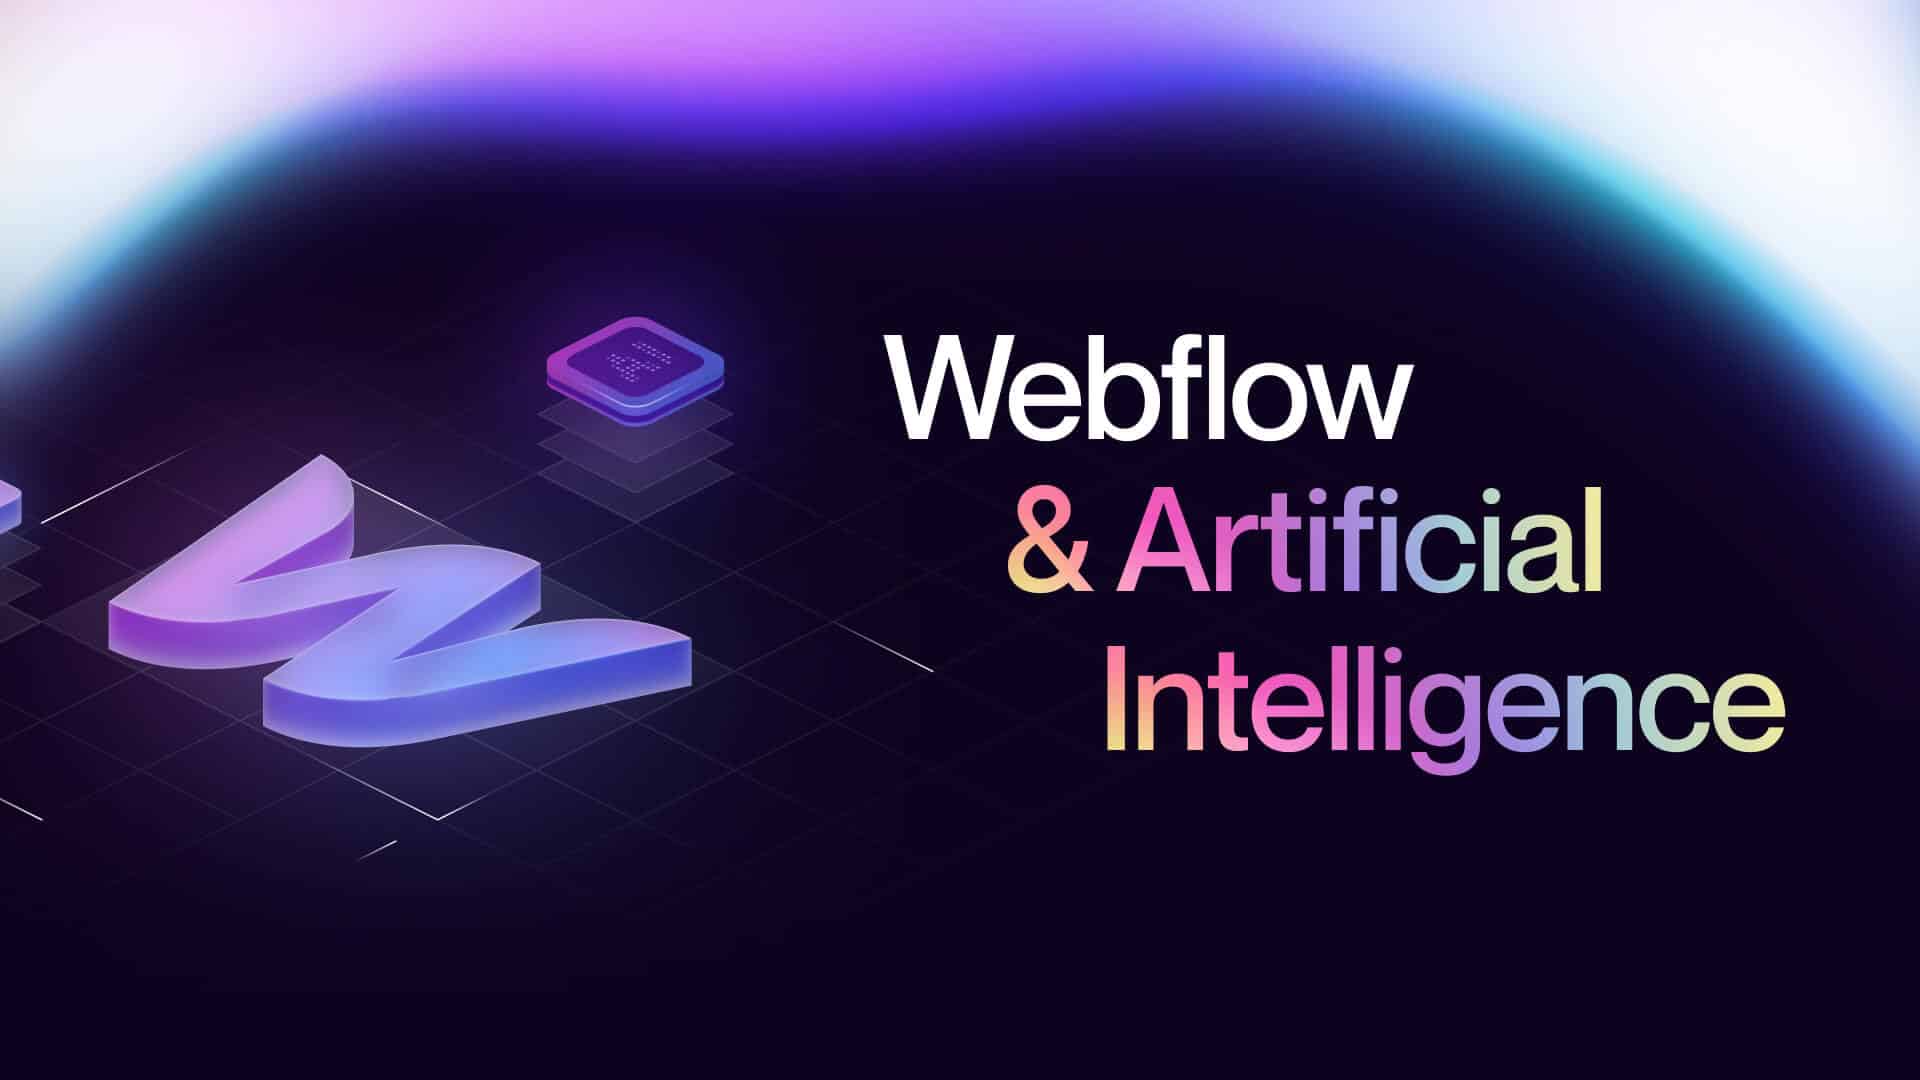 Aperçu de la page de lancement de la fonctionnalité Webflow&AI